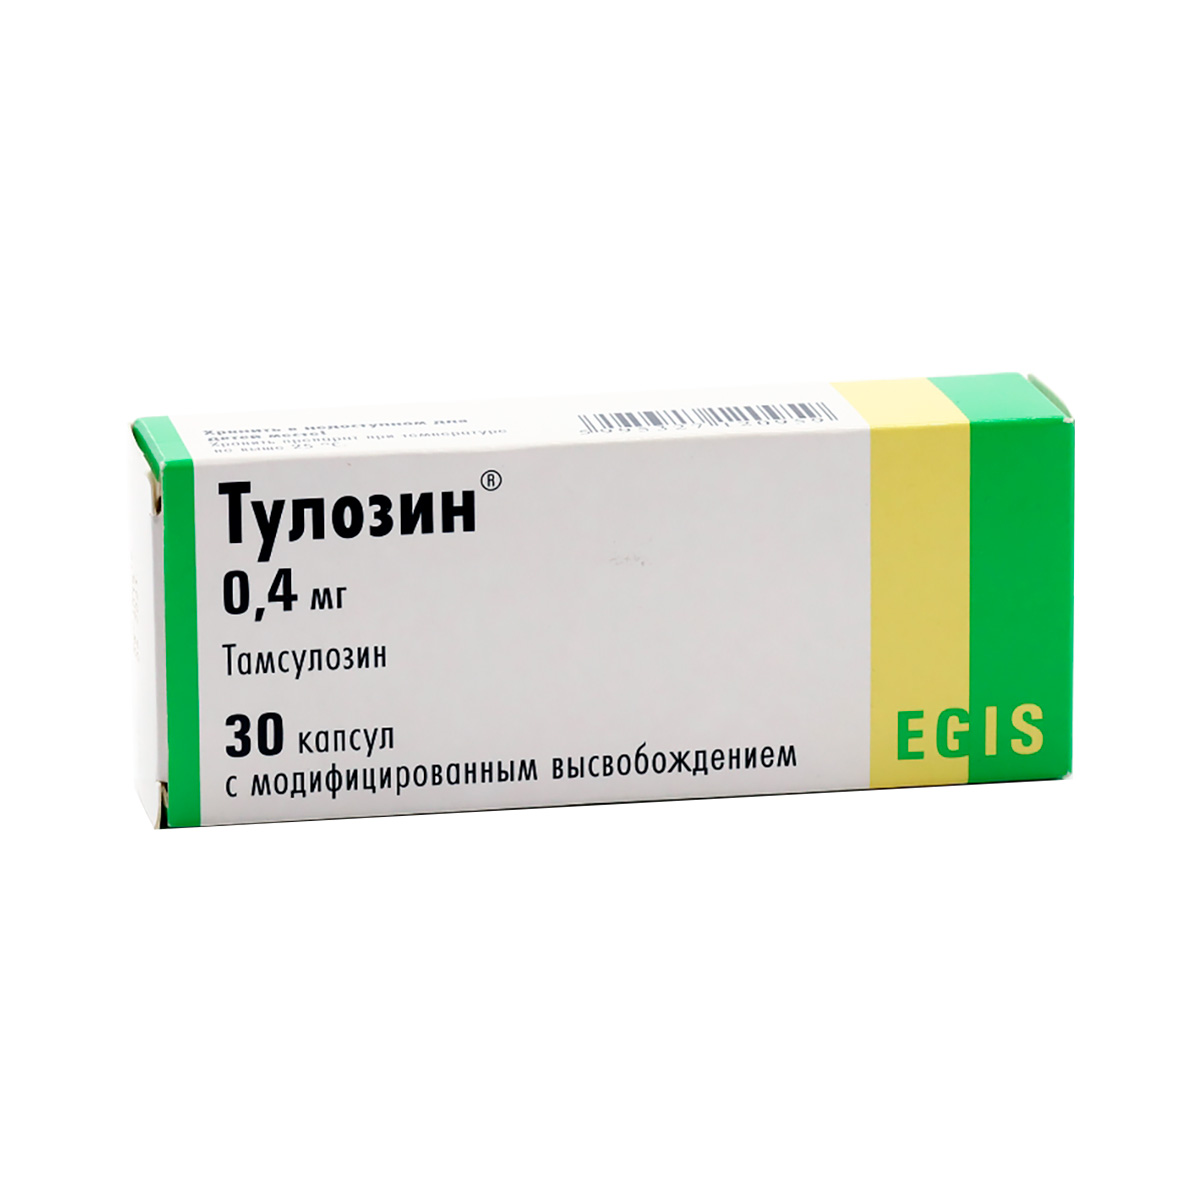 Тулозин 0,4 мг капсулы с модифицированным высвобождением 30 шт